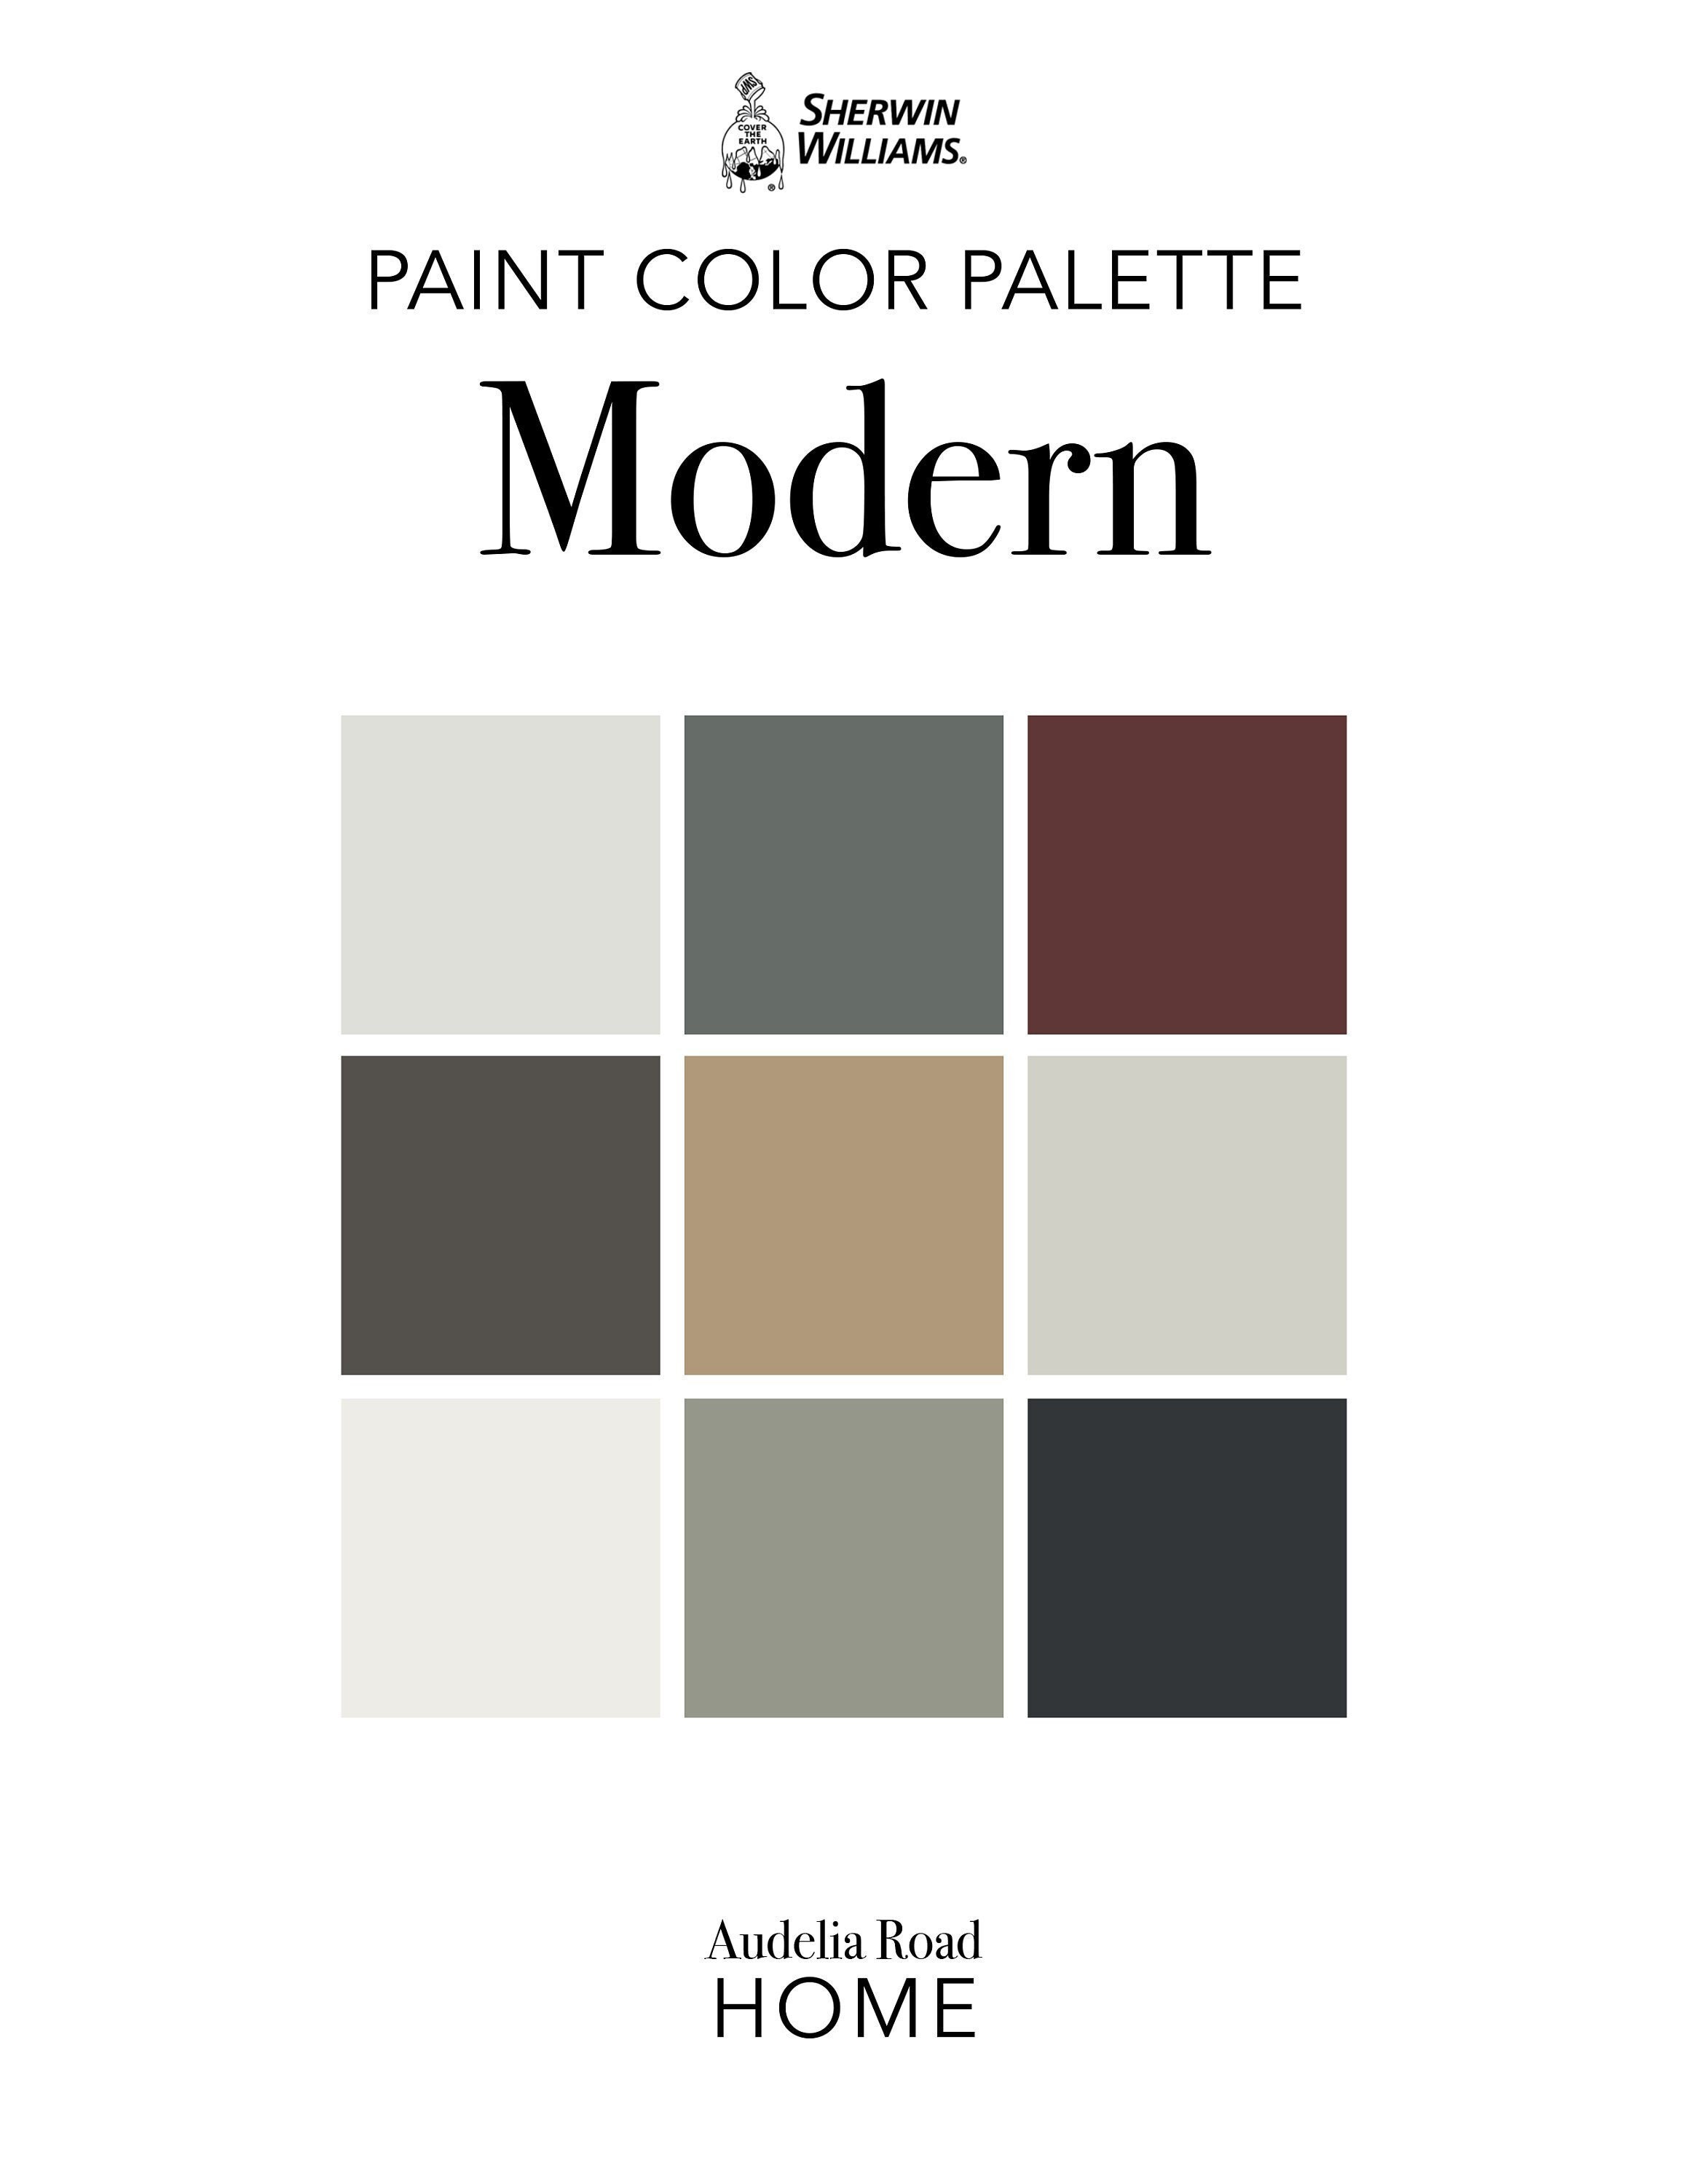 Modern Beige Tan Paint Color Palette, Sherwin Williams, Interior Paint  Palette, Professional Paint Scheme, Color Selection,interior Design 